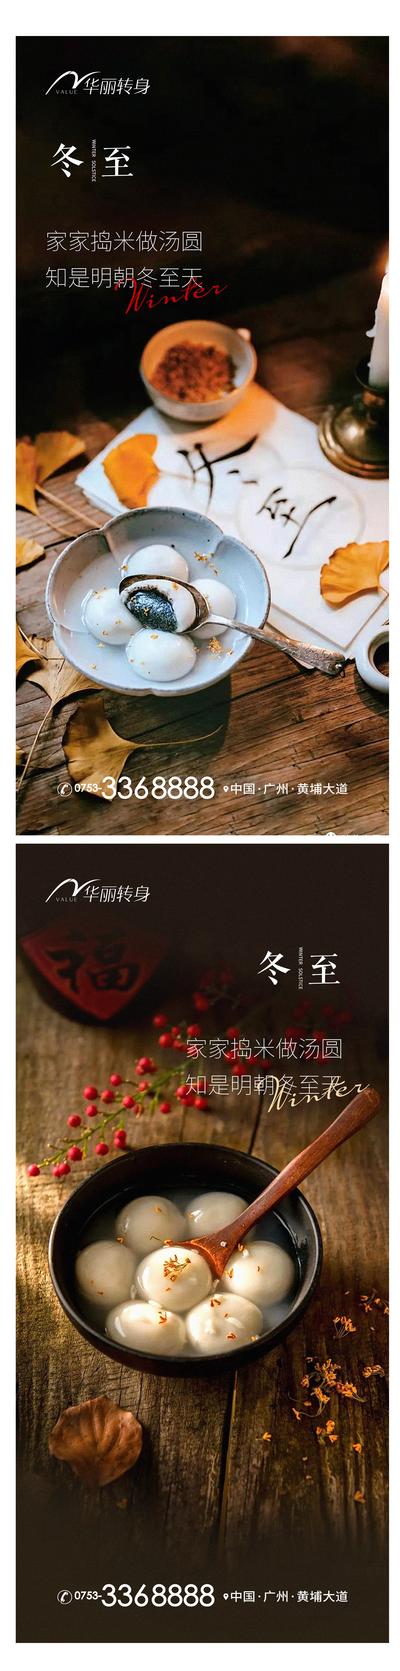 南门网 海报 房地产 二十四节气 冬至 家人 团圆 吃饺子 温馨